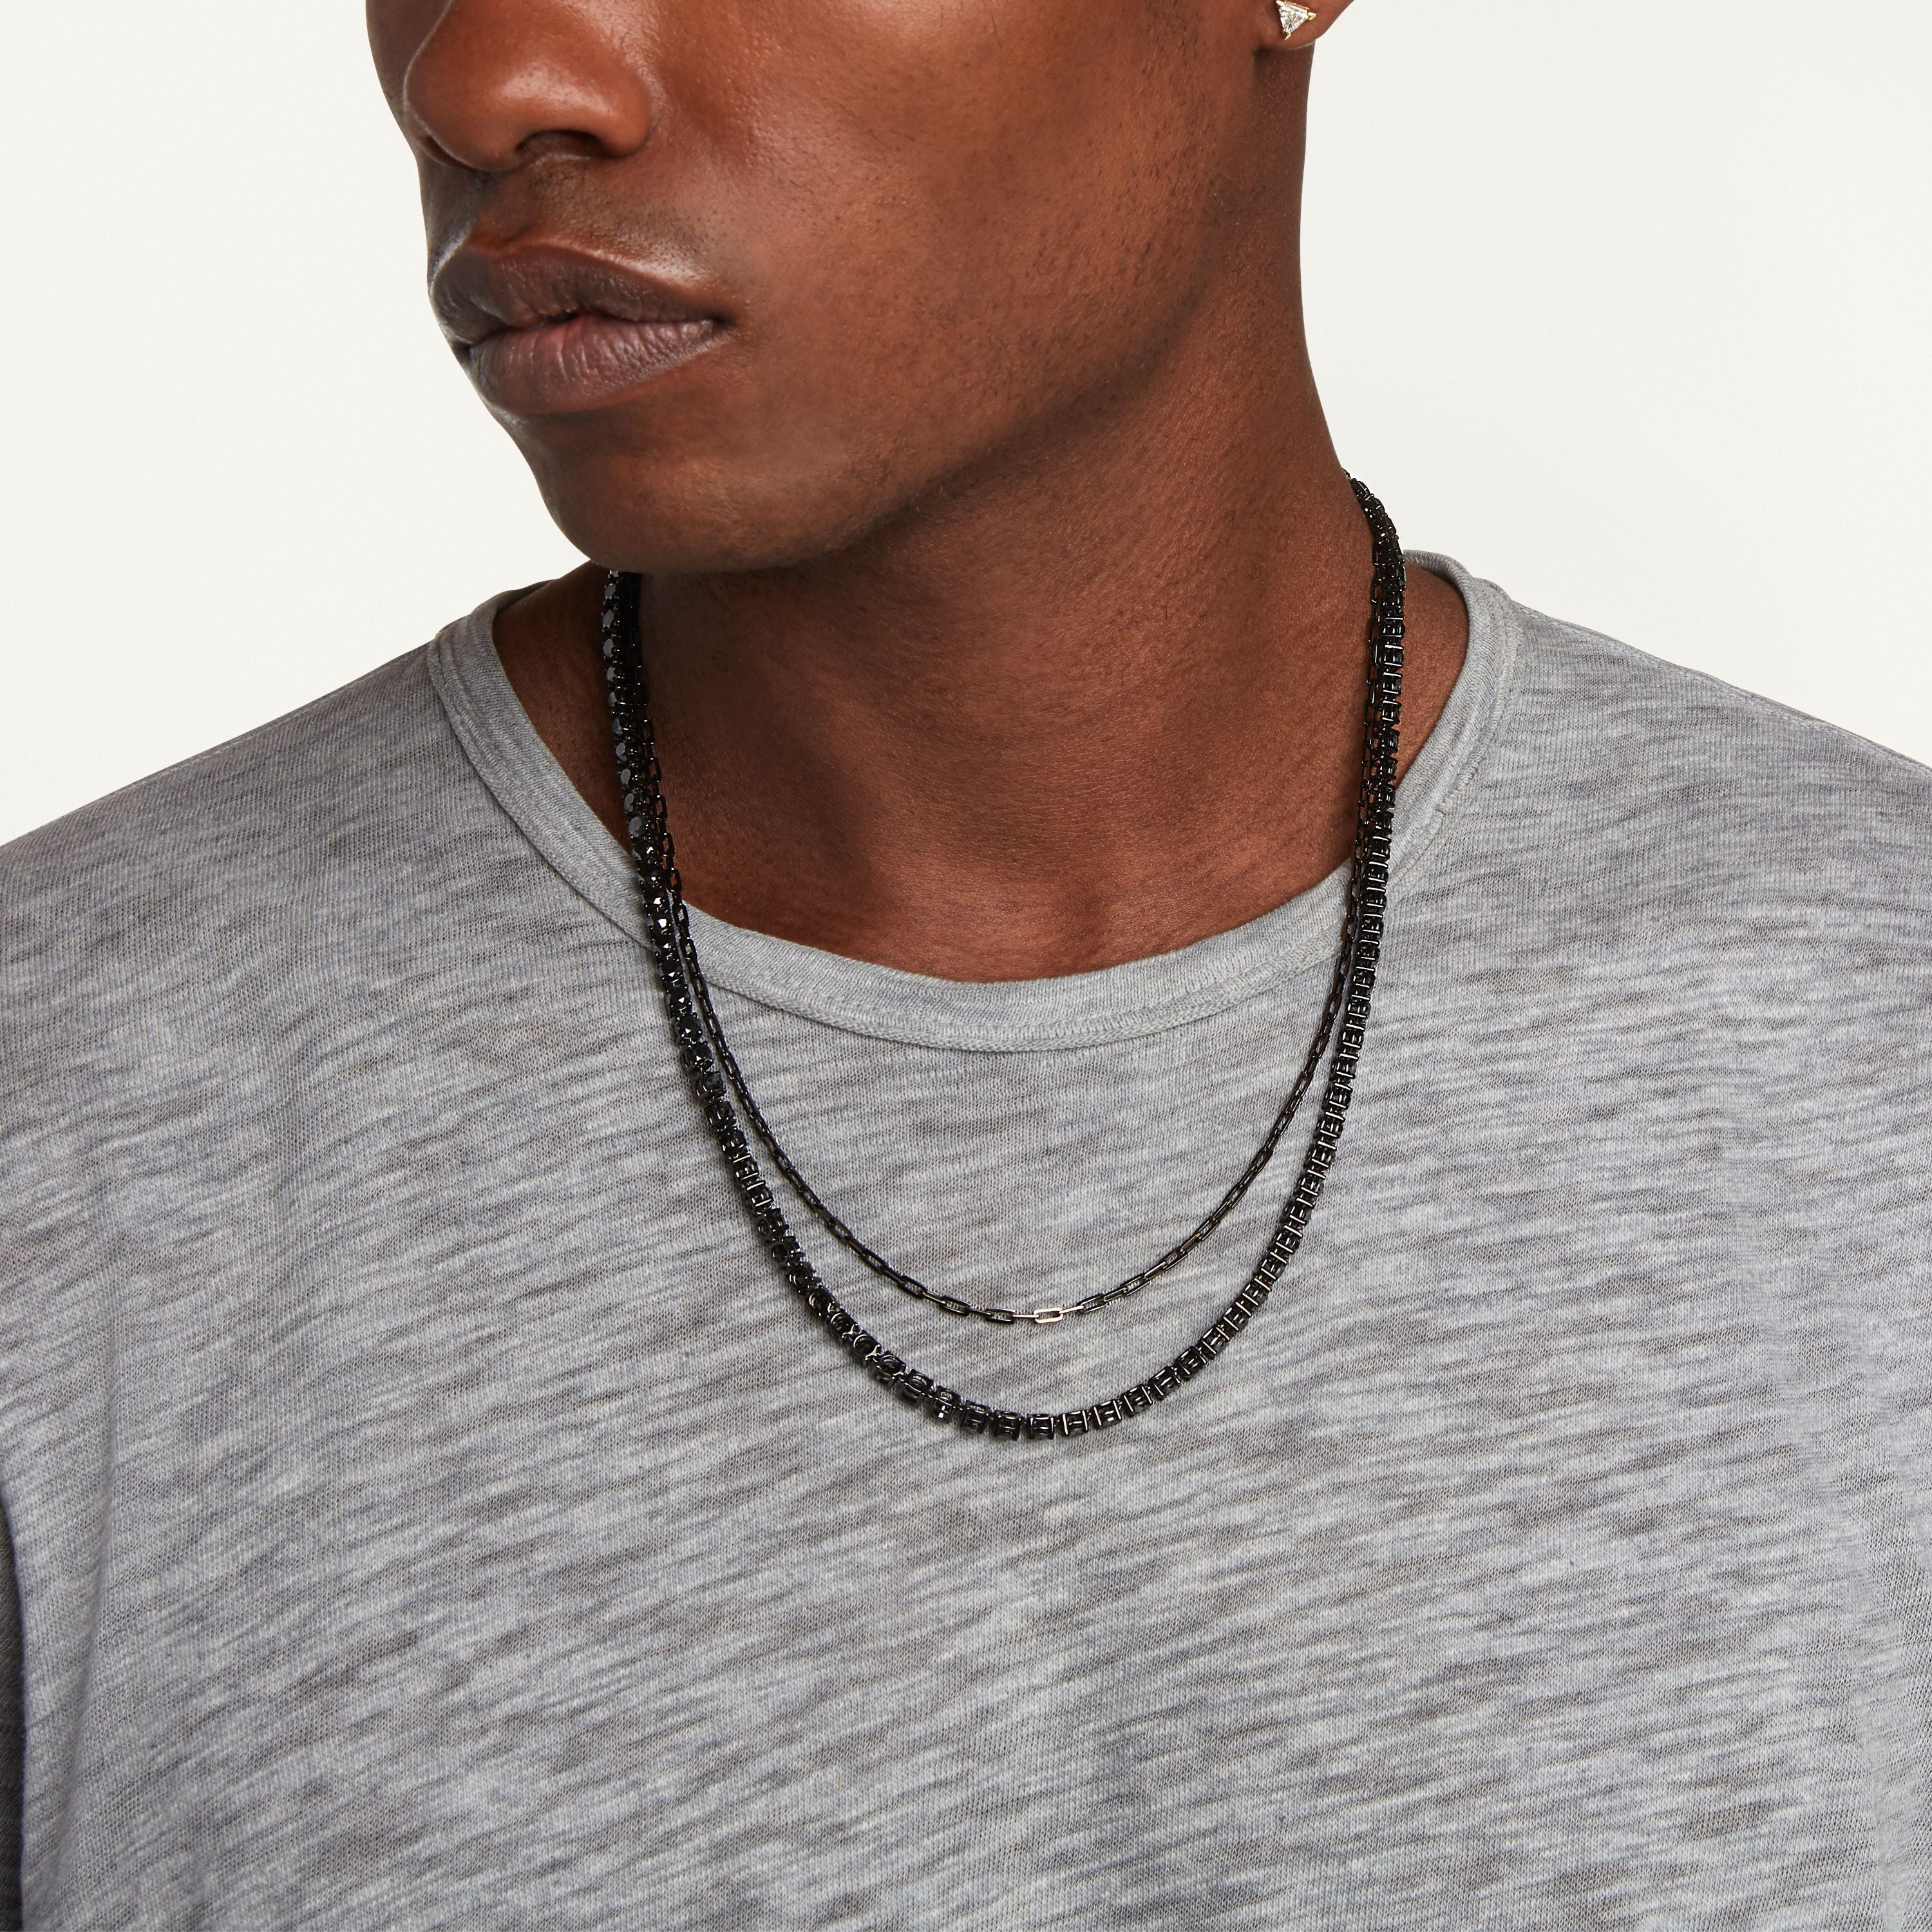 Men's Black Compass Pendant Necklace - Men's Black Necklace | Twistedpendant